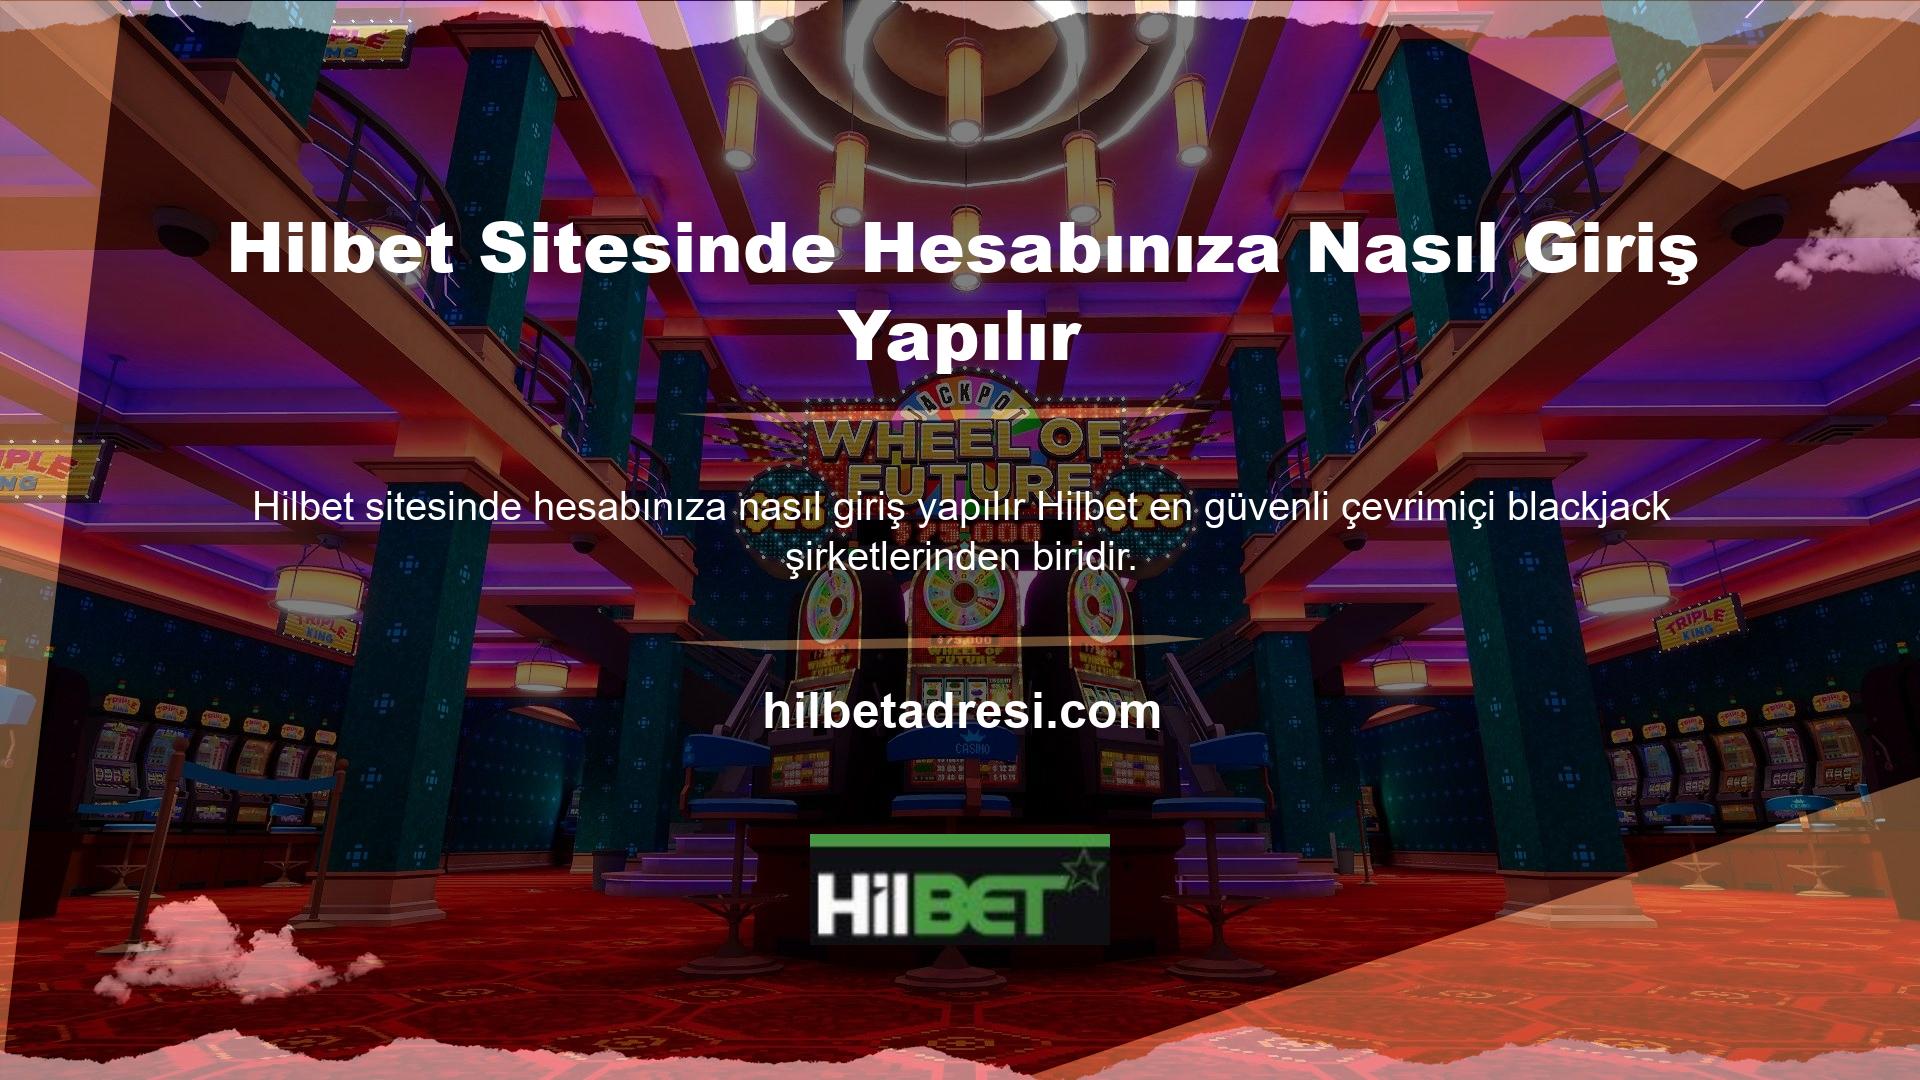 Tüm poker oyuncu toplulukları arasında en popüler ve tanınan rulet sitelerinden biri olan Hilbet web sitesinde hesabınıza nasıl giriş yapılır? Tüm poker oyunlarıyla ilgilenen poker oyuncuları, Türkiye'de bir online casino şirketini nasıl bulacaklarını bilmek isterler